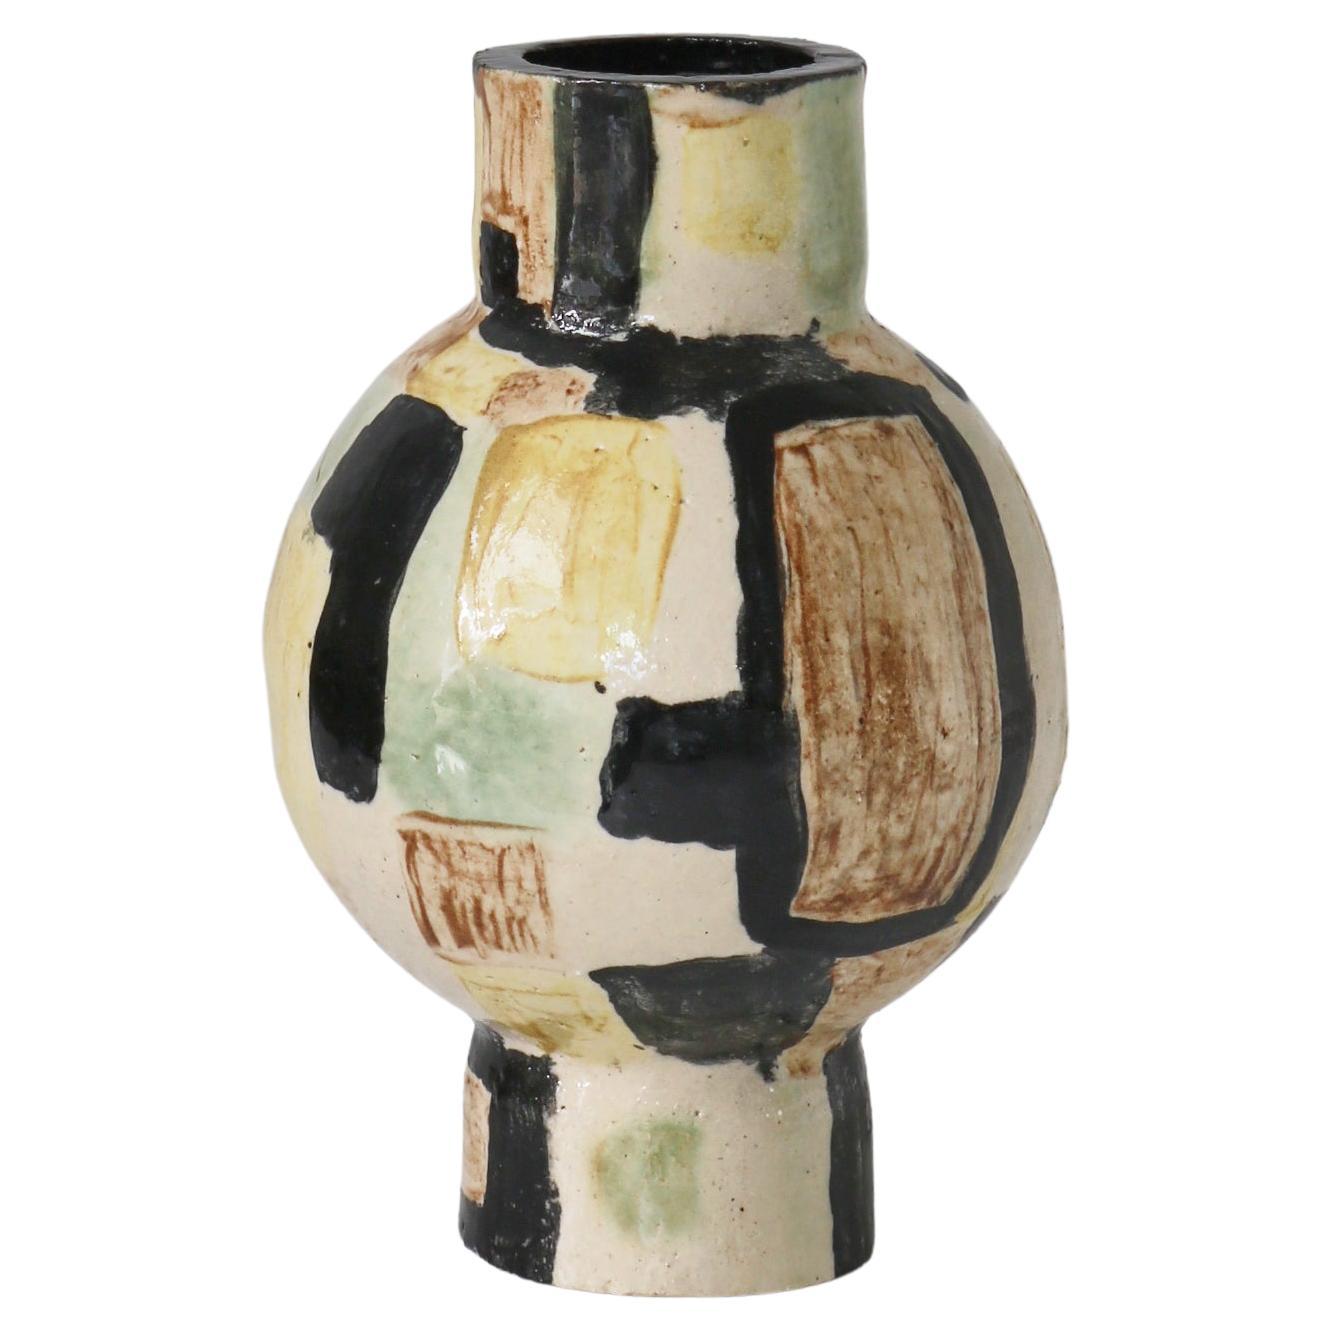 Unique Modernist Stoneware Vase by Vilhelm Bjerke-Petersen, Sweden, 1950s